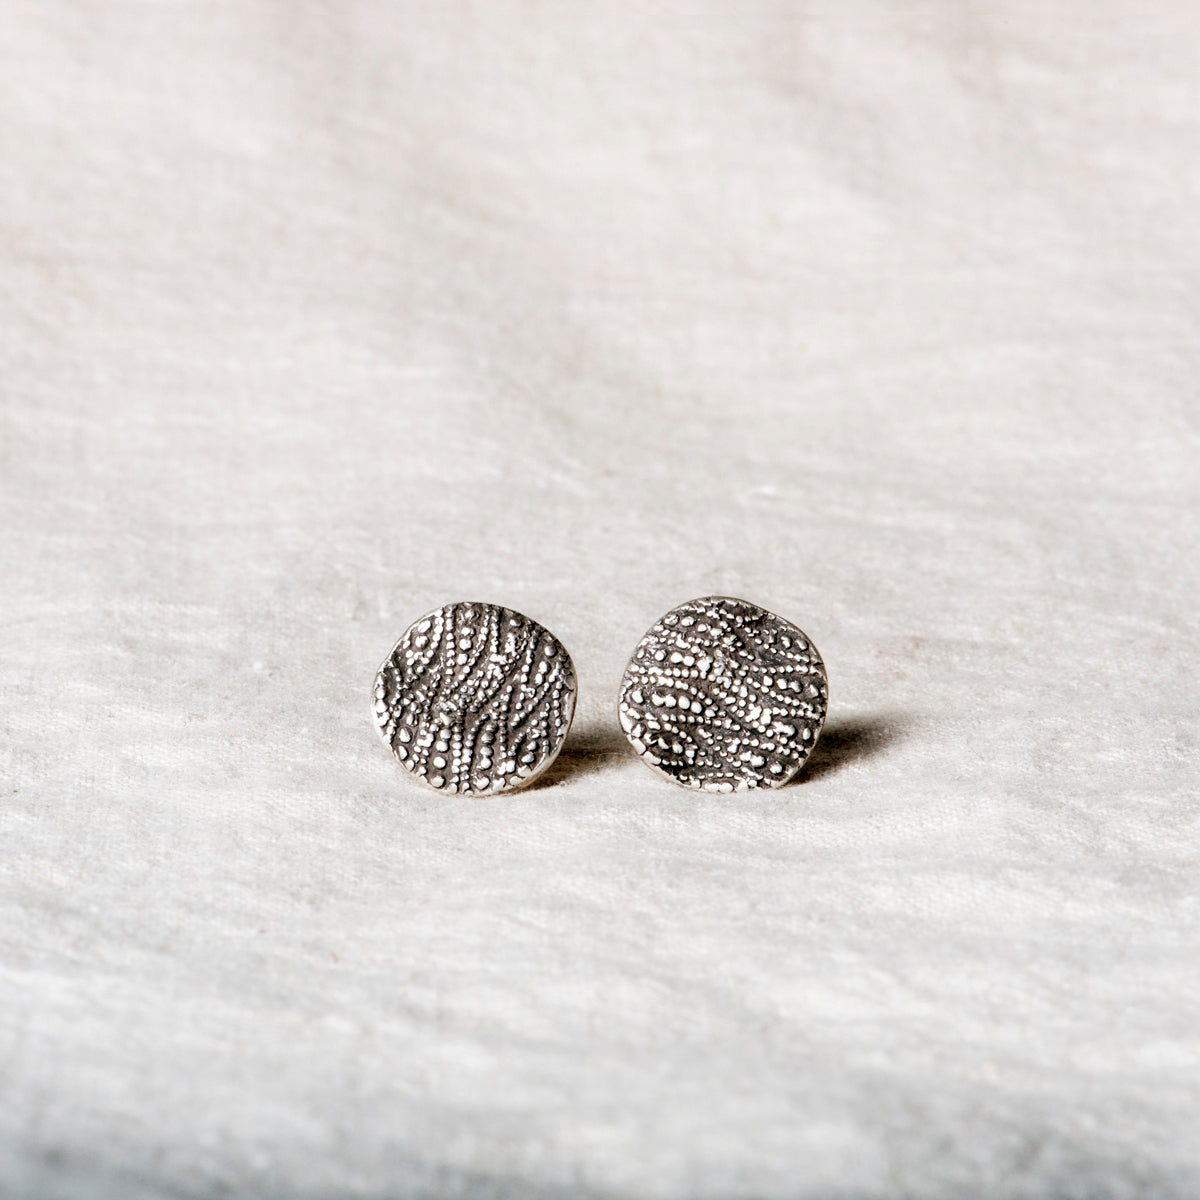 Confetti Vintage Button Silver Stud Earrings by Jester Swink - Jester Swink